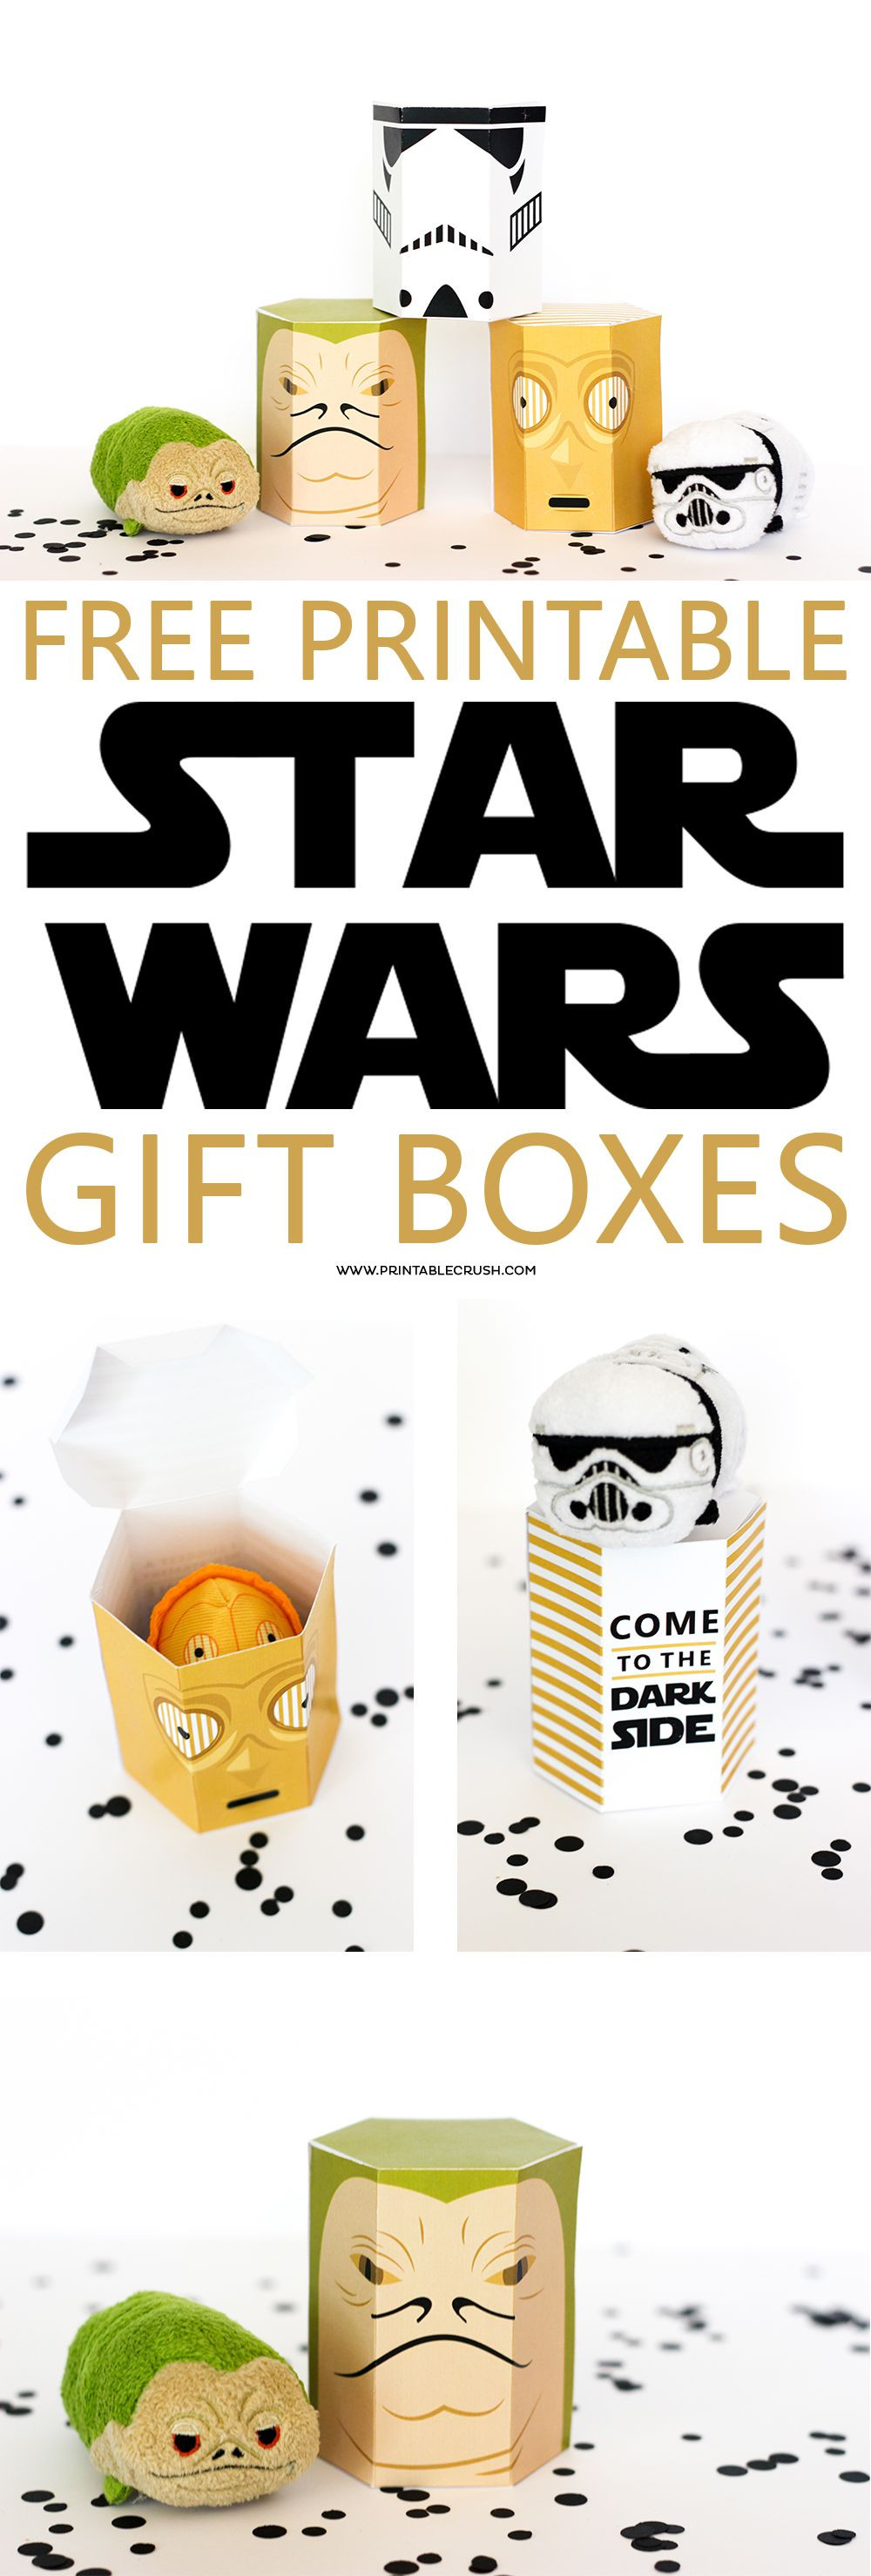 Geschenke Star Wars
 Geschenke im Star Wars Style verpacken